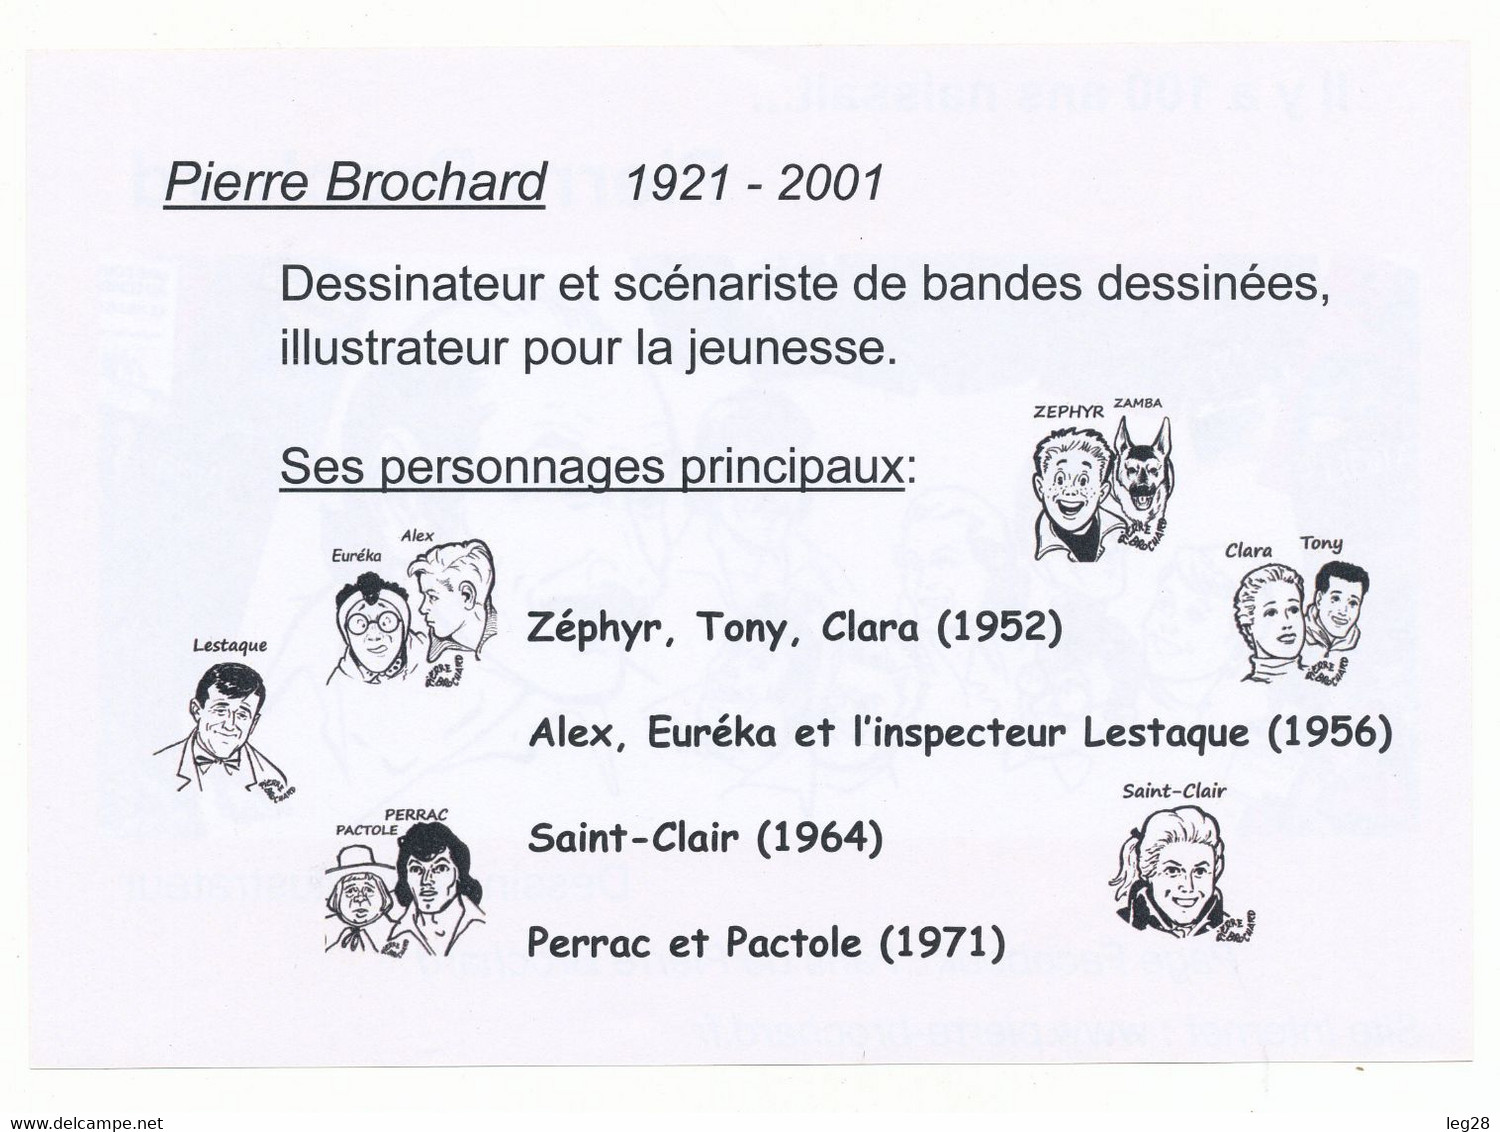 PIERRE BROCHARD - Affiches & Offsets